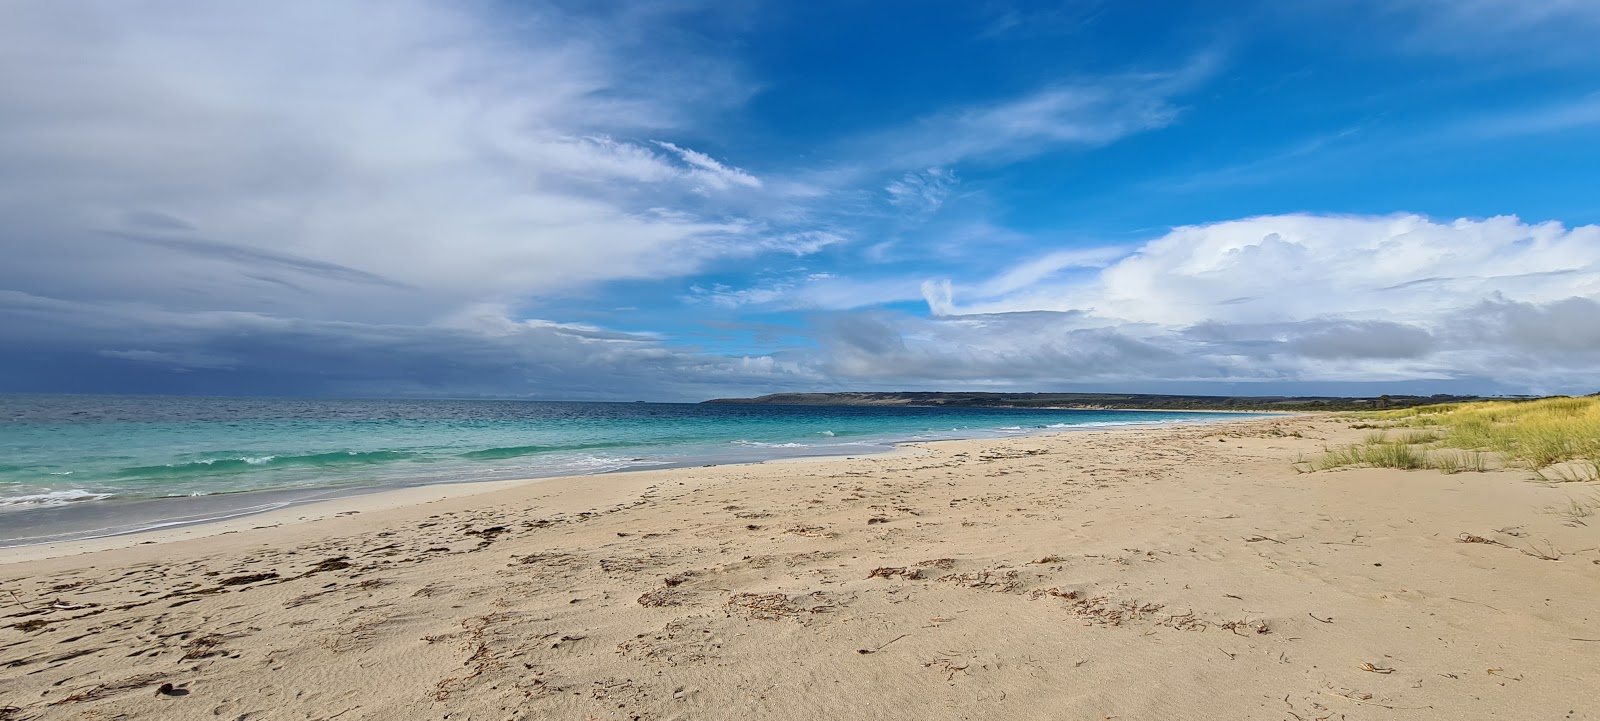 Fotografie cu Antechamber Bay Beach cu o suprafață de nisip strălucitor